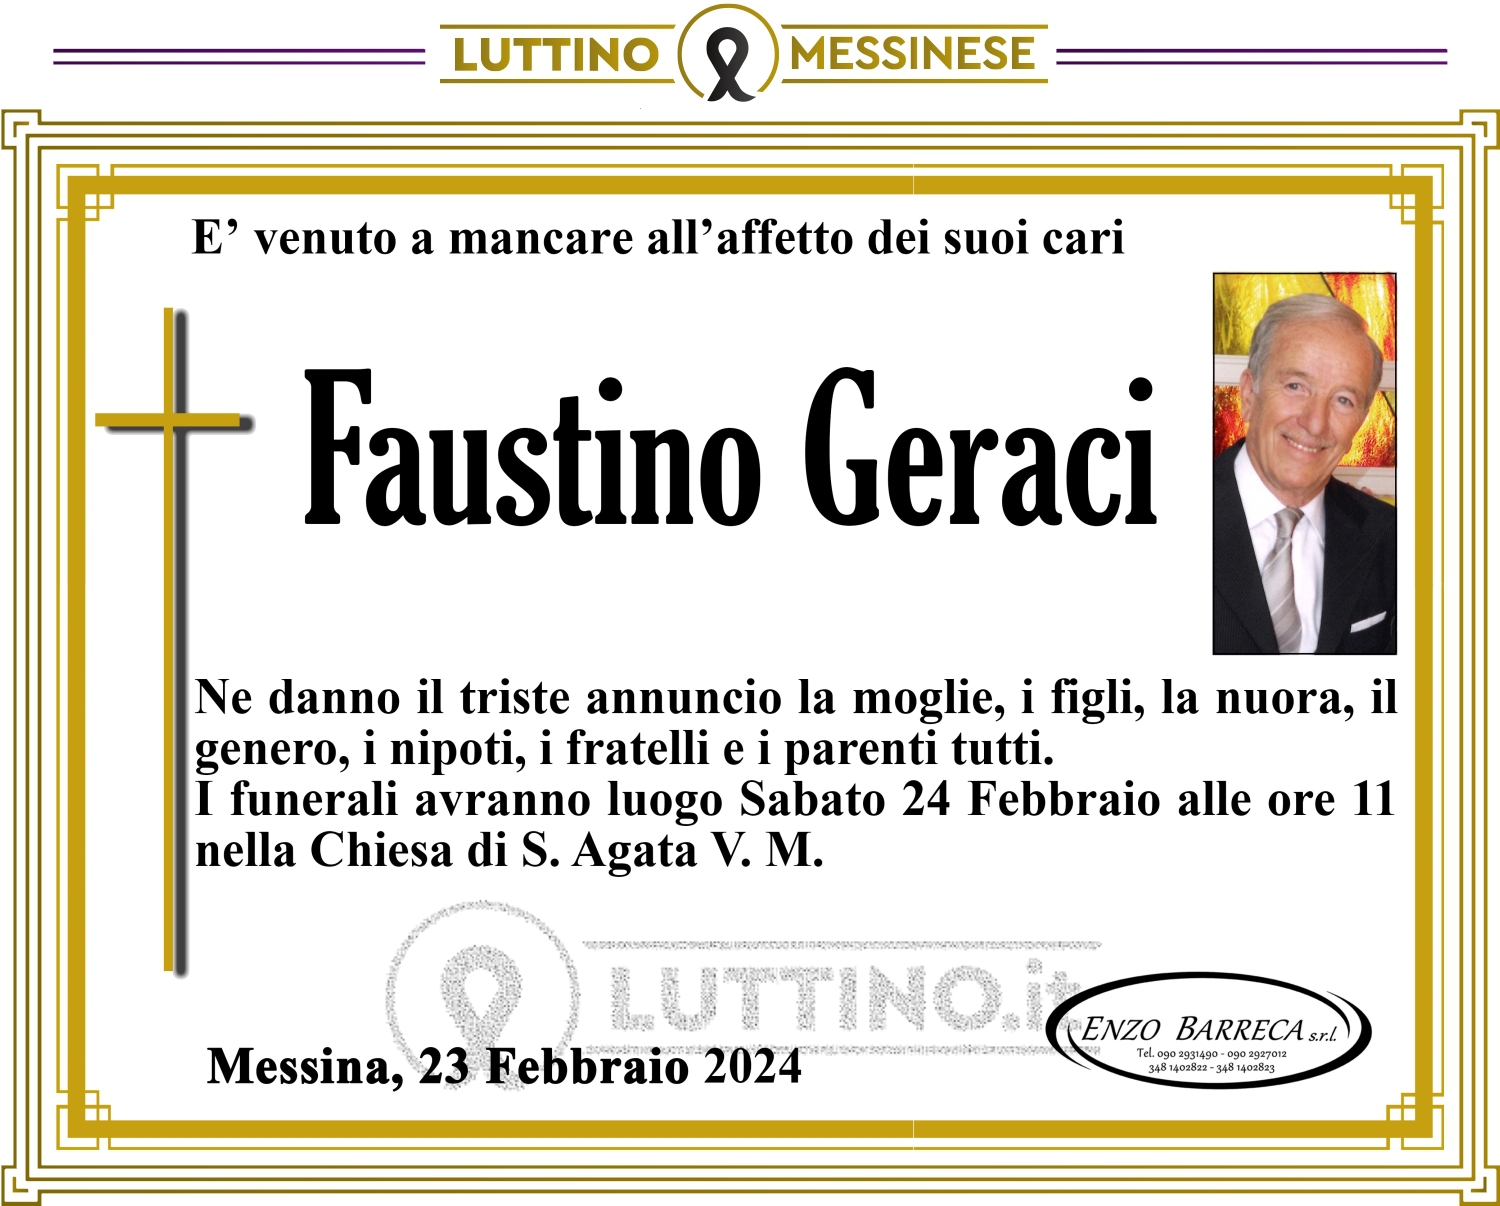 Faustino Geraci